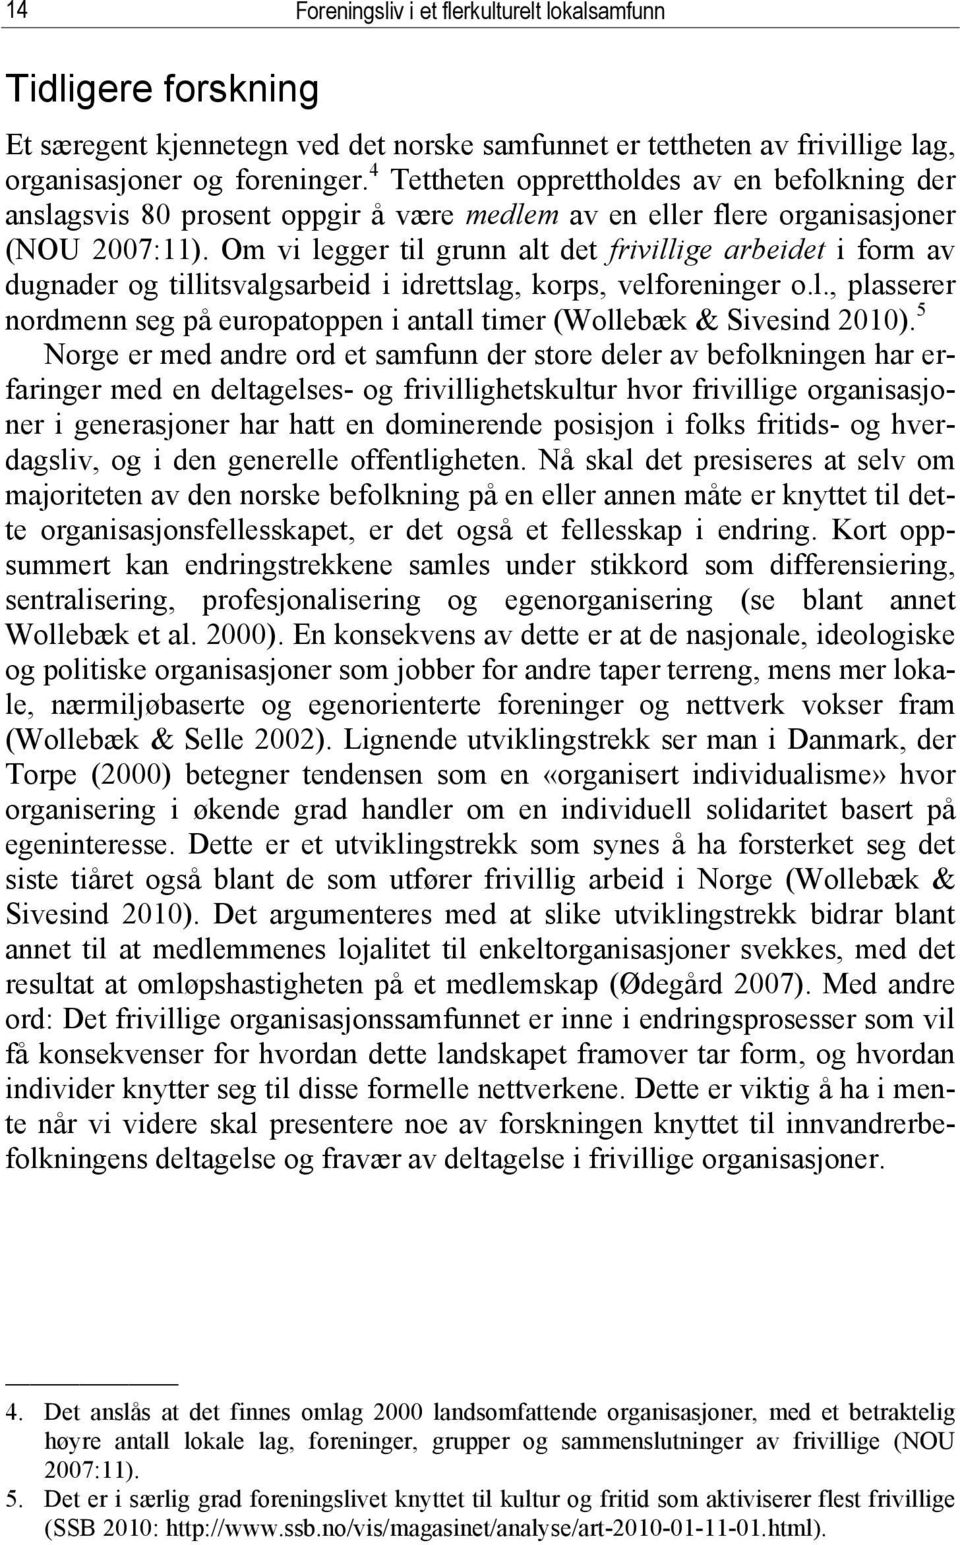 Om vi legger til grunn alt det frivillige arbeidet i form av dugnader og tillitsvalgsarbeid i idrettslag, korps, velforeninger o.l., plasserer nordmenn seg på europatoppen i antall timer (Wollebæk & Sivesind 2010).